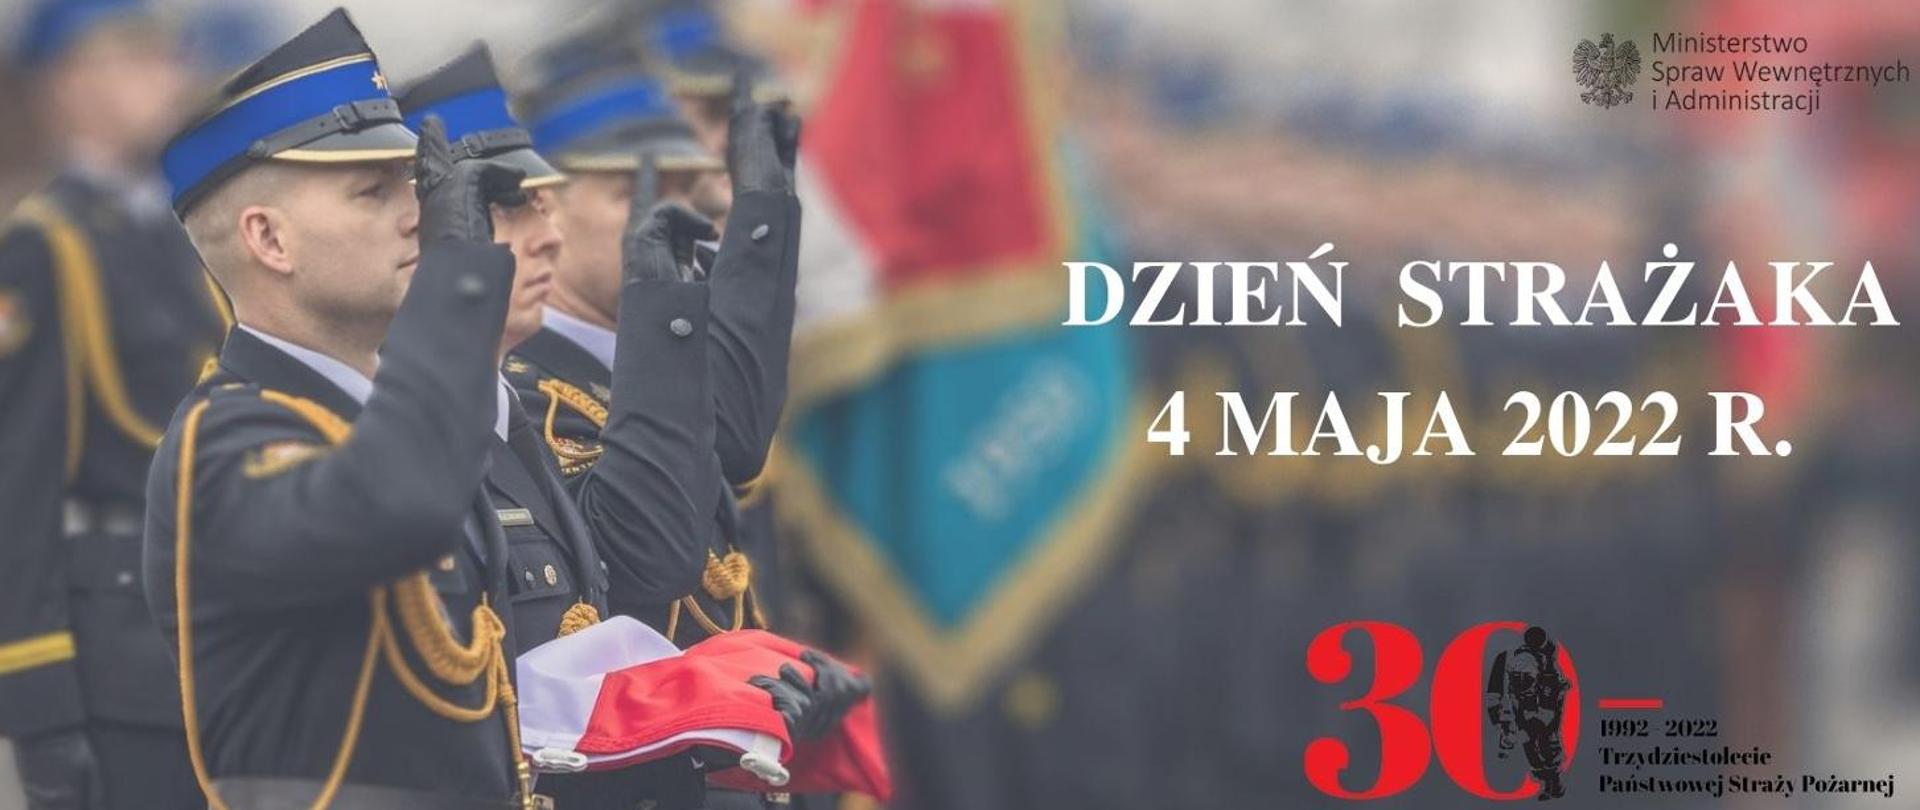 Zdjęcie przedstawia oddających honory funkcjonariuszy PSP podczas uroczystego podniesienia flagi państwej z okazji dnia strażaka obchodzonego 4 maja 2022 r. , napis 30lecie PSP oraz logo Ministerstwo Spraw Wewnętrznych i Administracji.